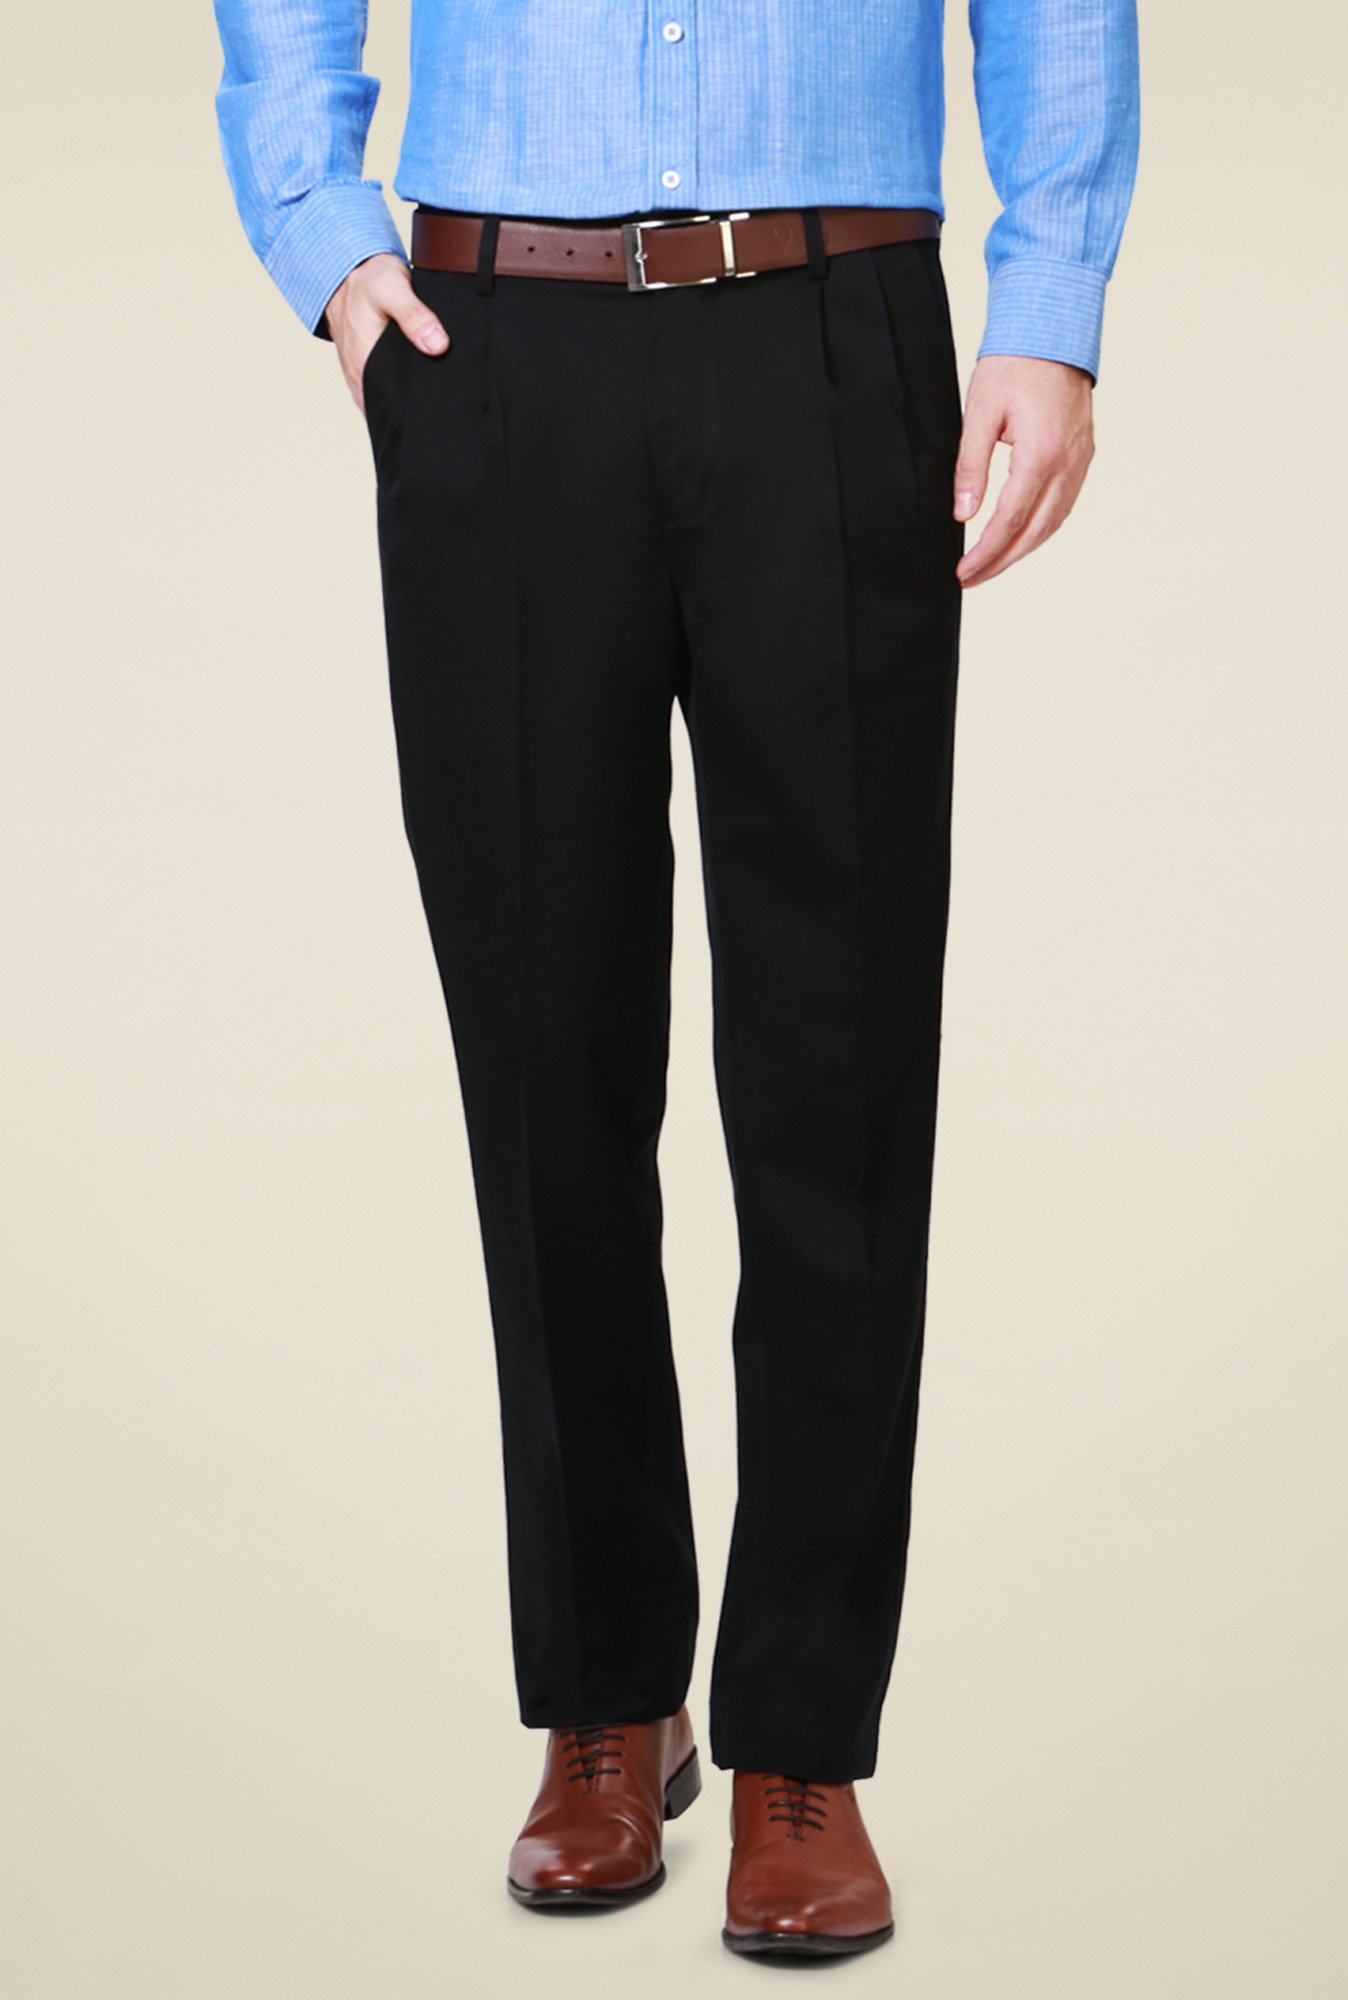 Buy Allen Solly Woman Women Black Solid Regular Trousers - Trousers for  Women 4441860 | Myntra